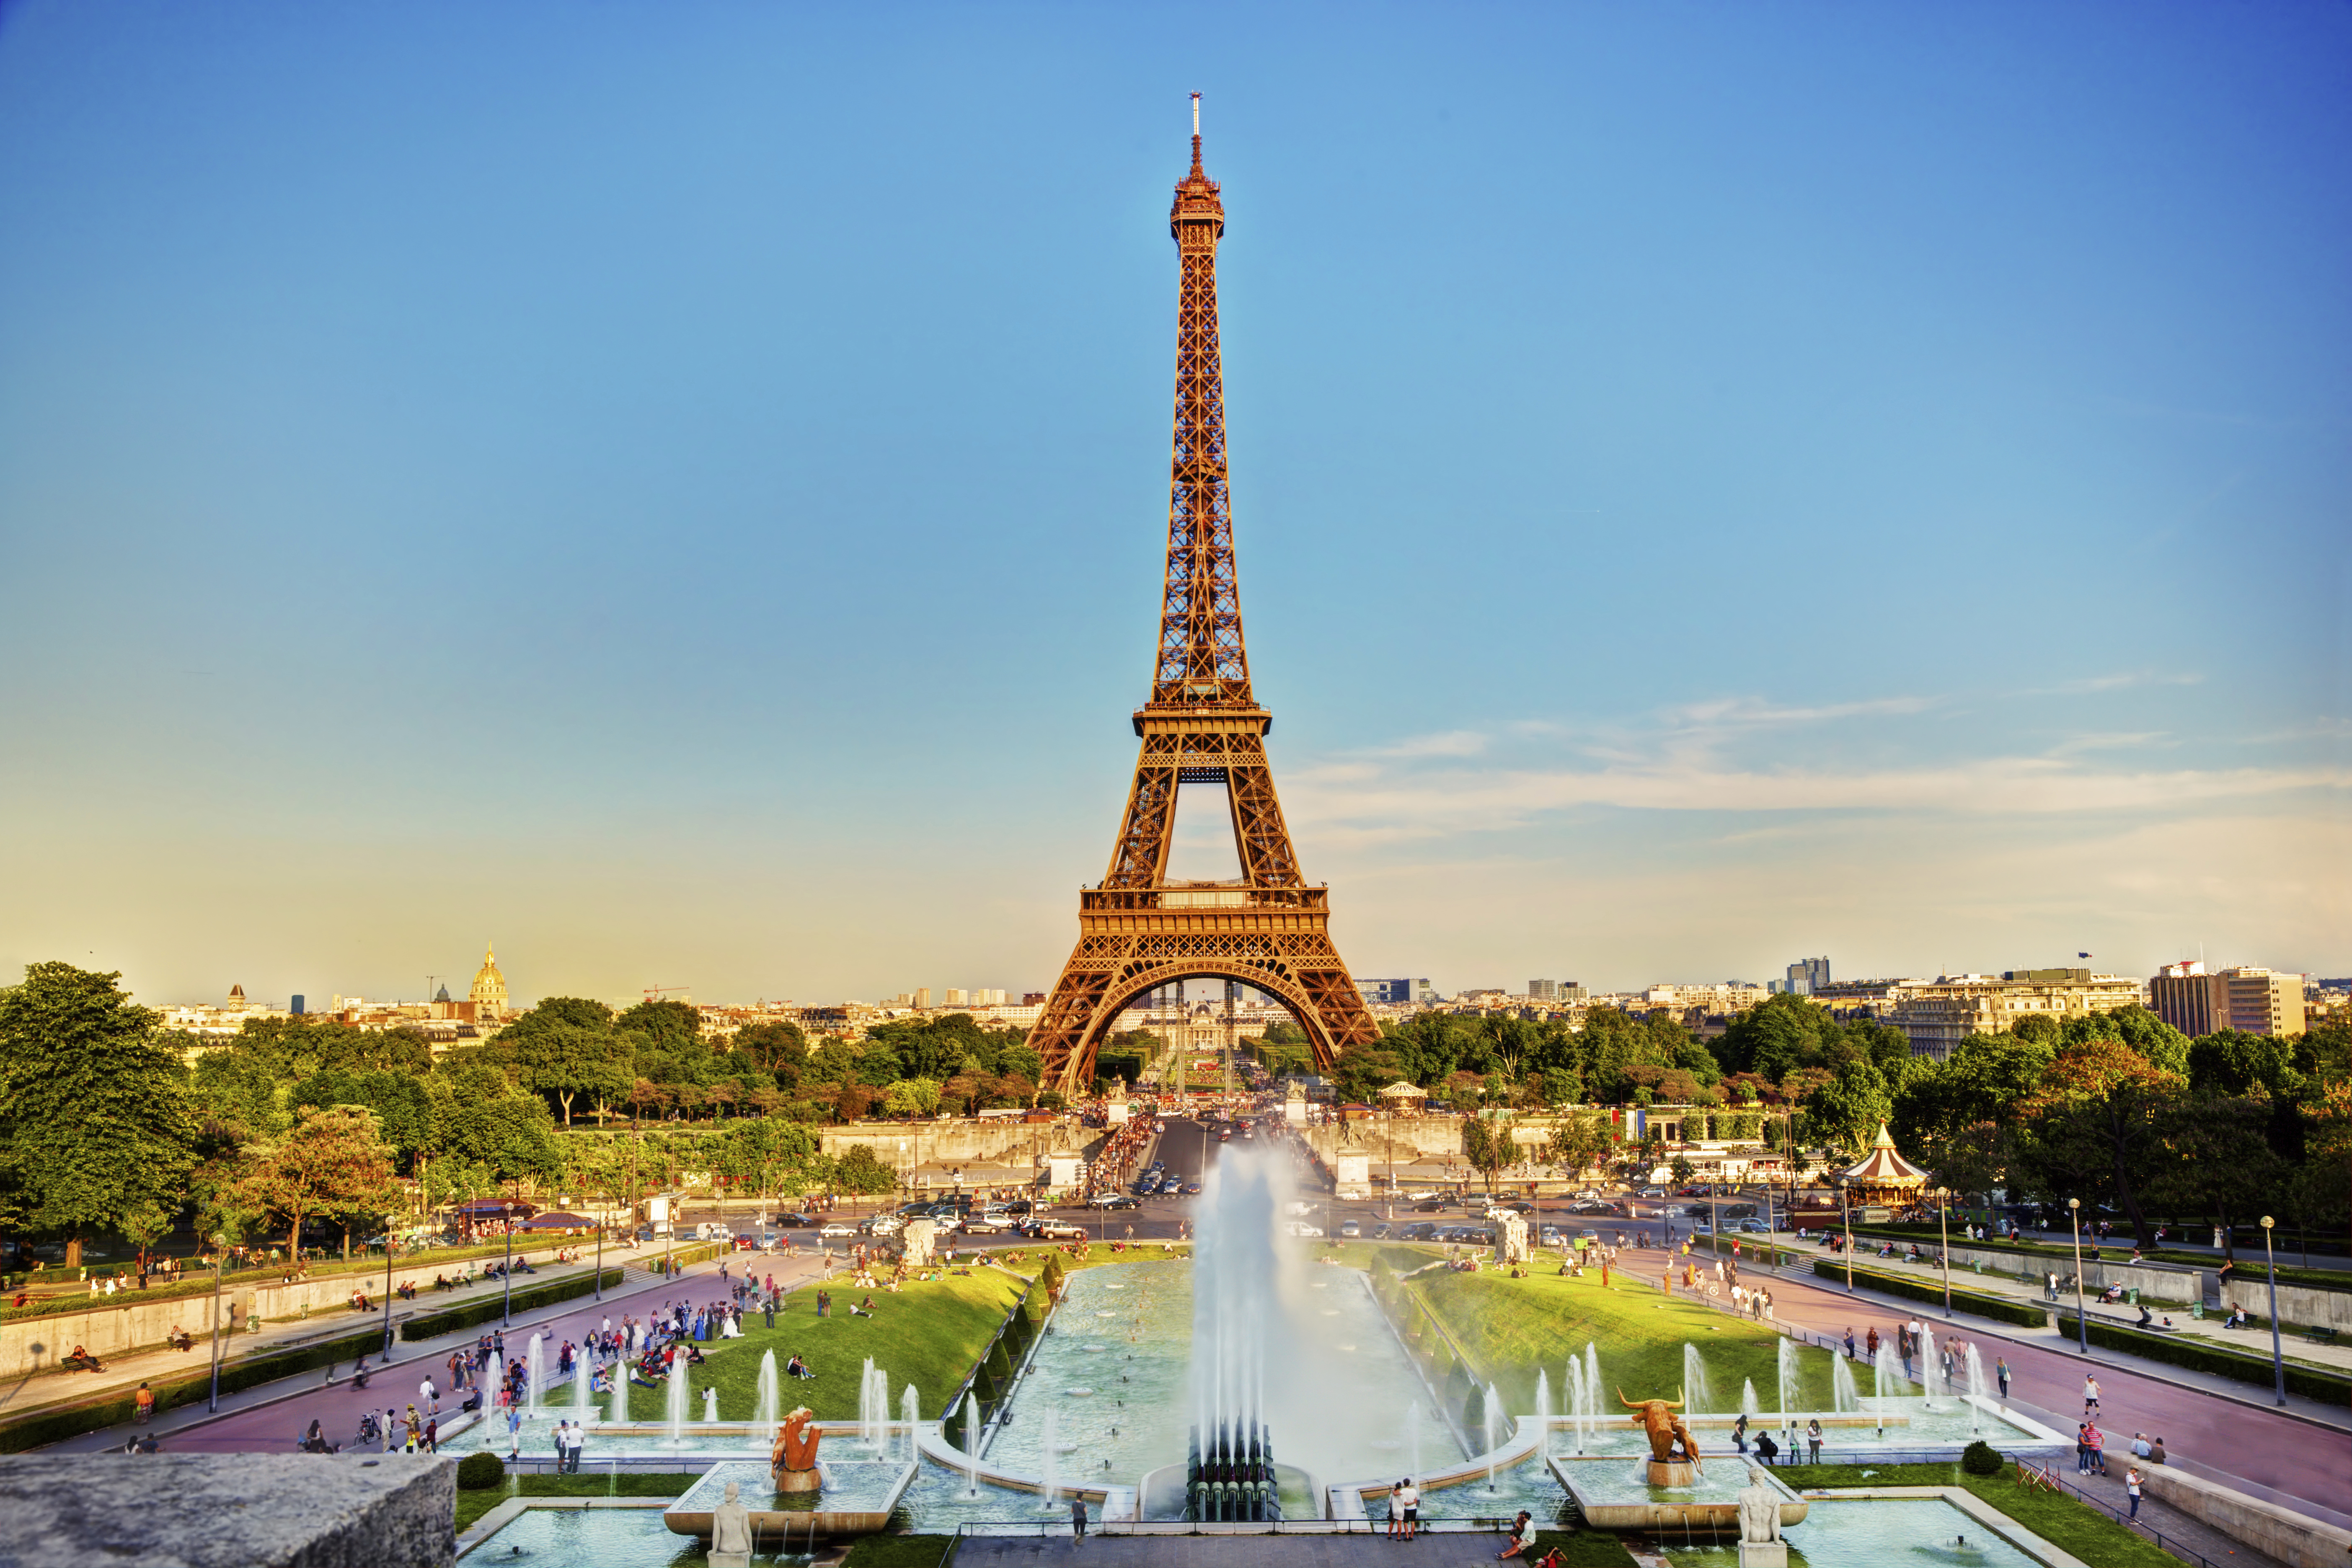 หอไอเฟล (Eiffel Tower หรือ La tour Eiffel) กรุงปารีส ประเทศฝรั่งเศส